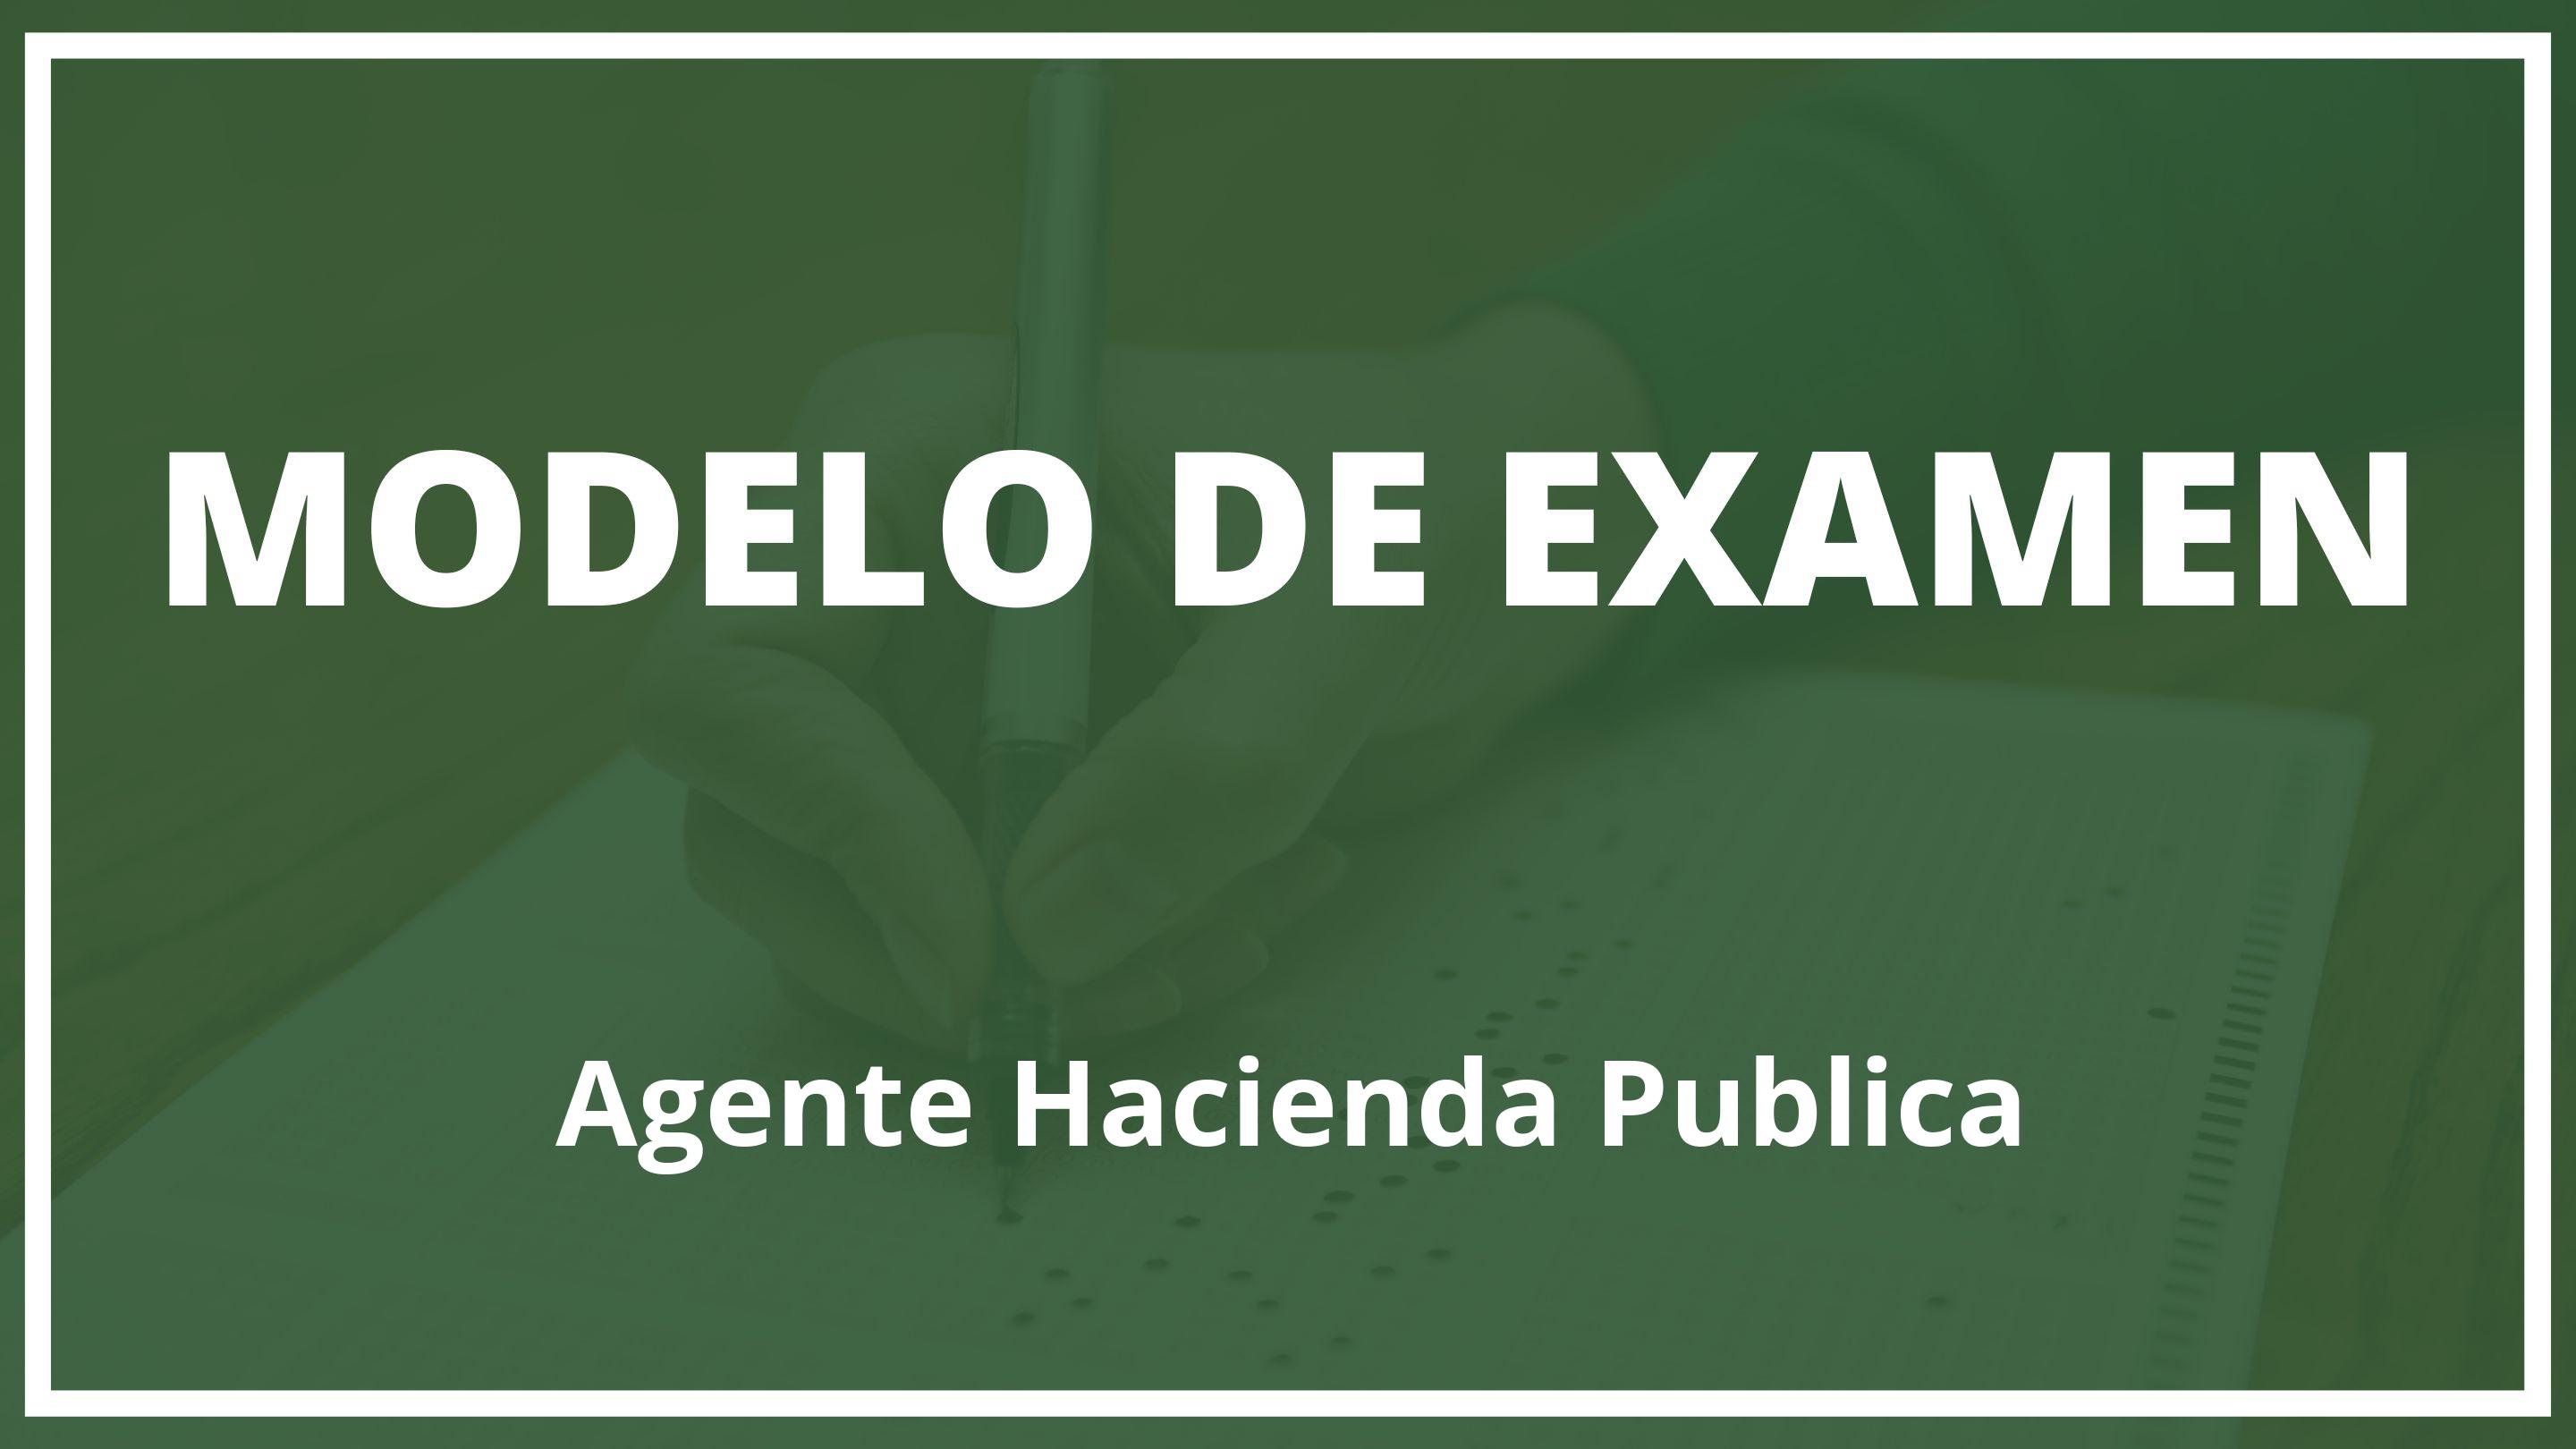 Examen Agente Hacienda Publica